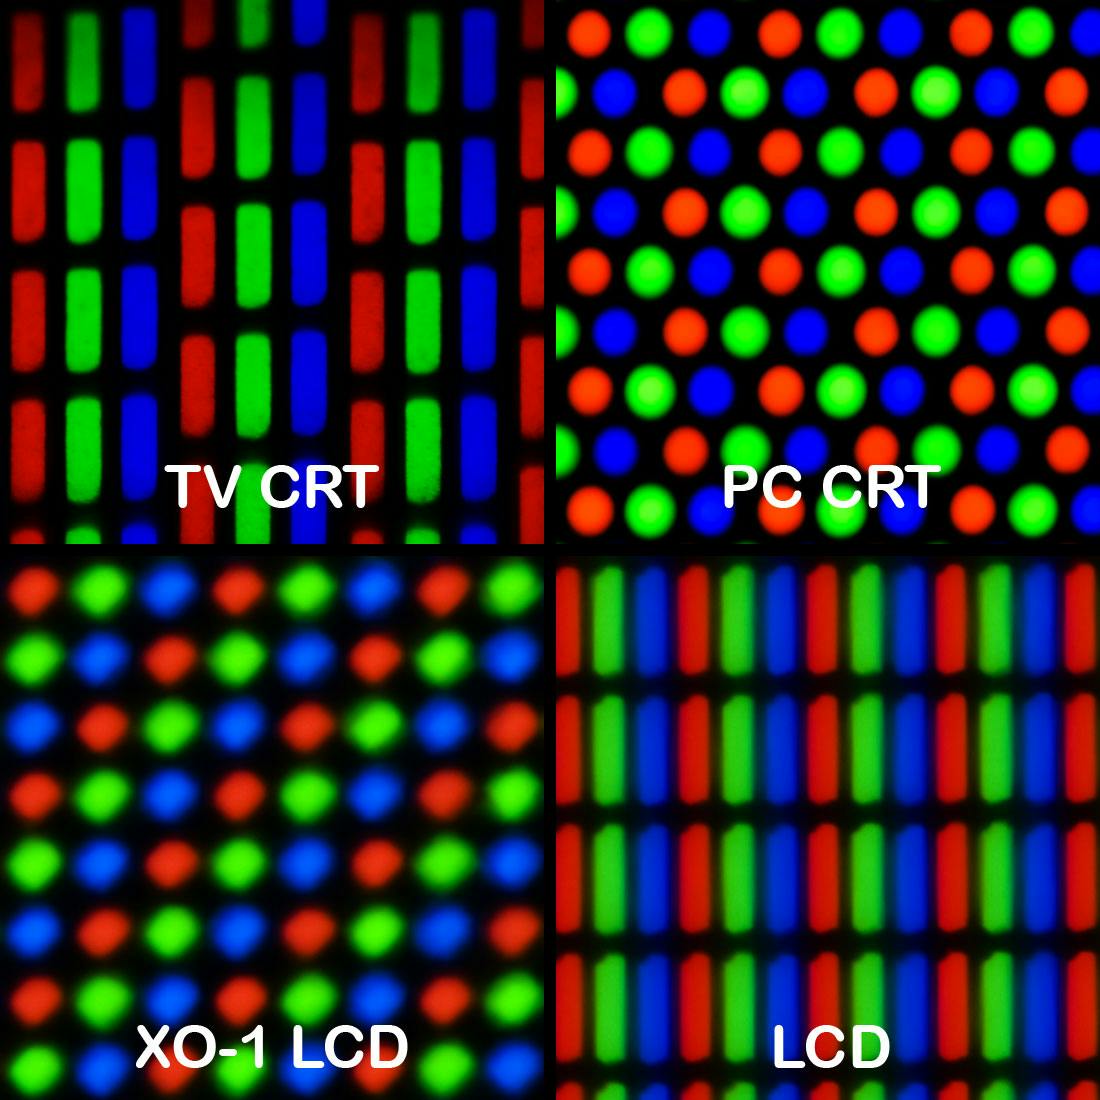 Different arrangements of screen pixels 